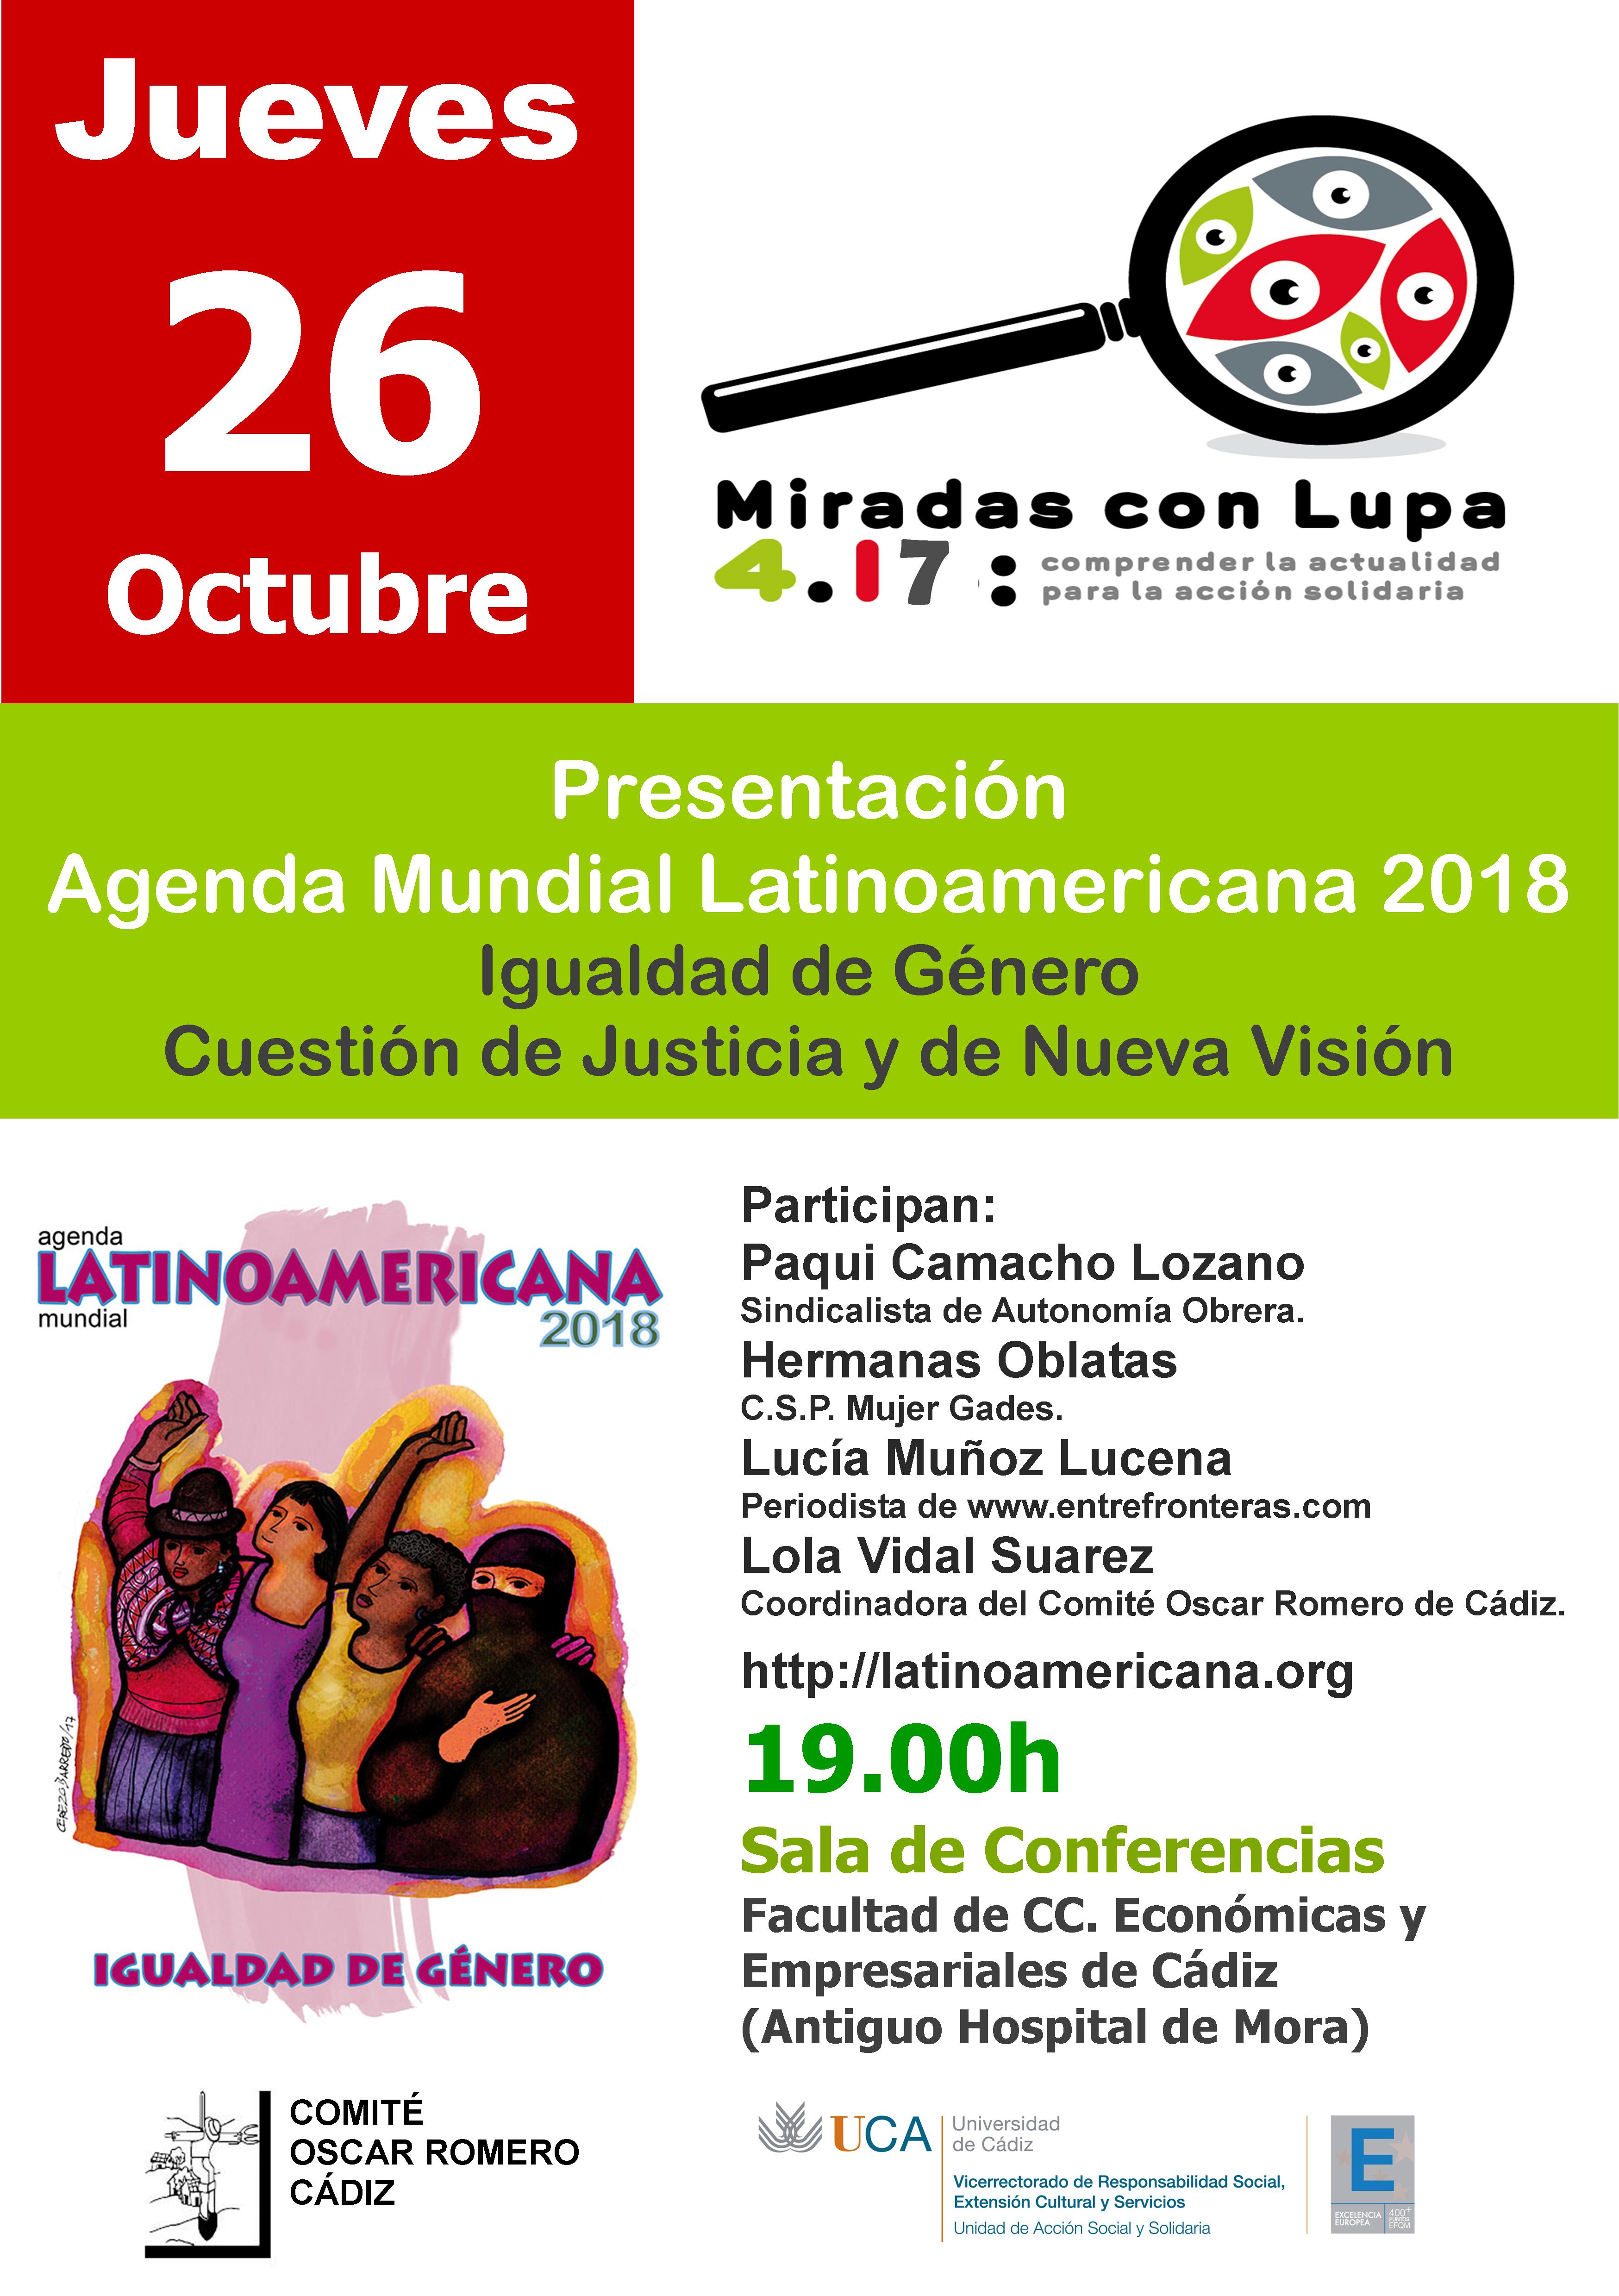 26 de octubre. Presentación de la Agenda Latinoamericana 2018. Ciclo Miradas con Lupa 4.17